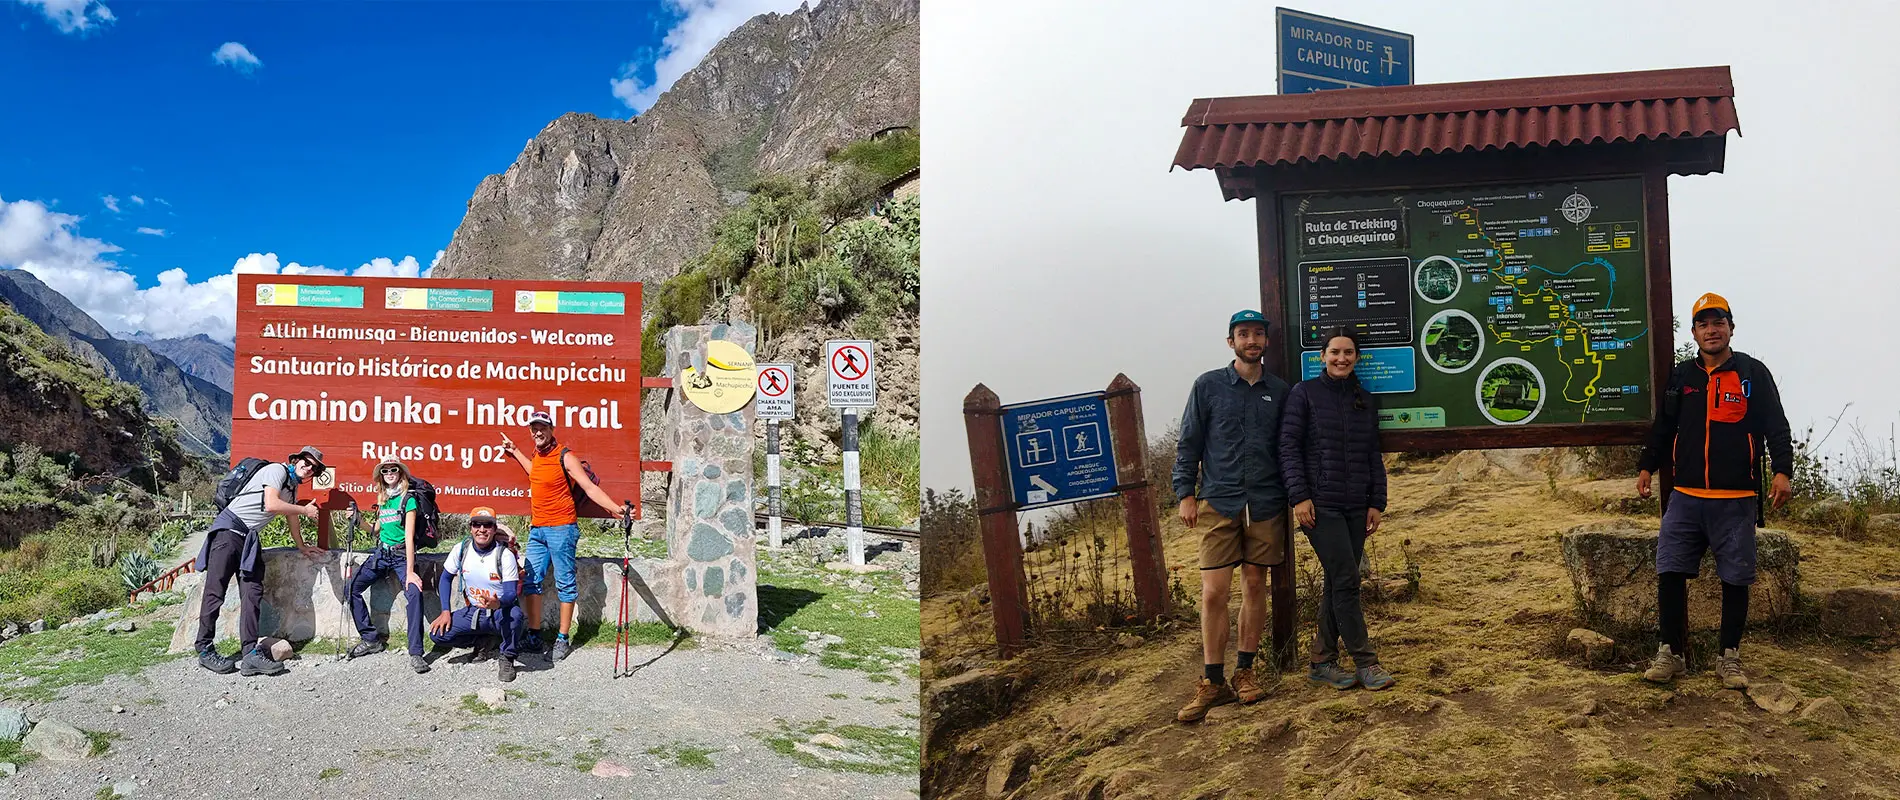 Inca Trail vs Alternative Trek